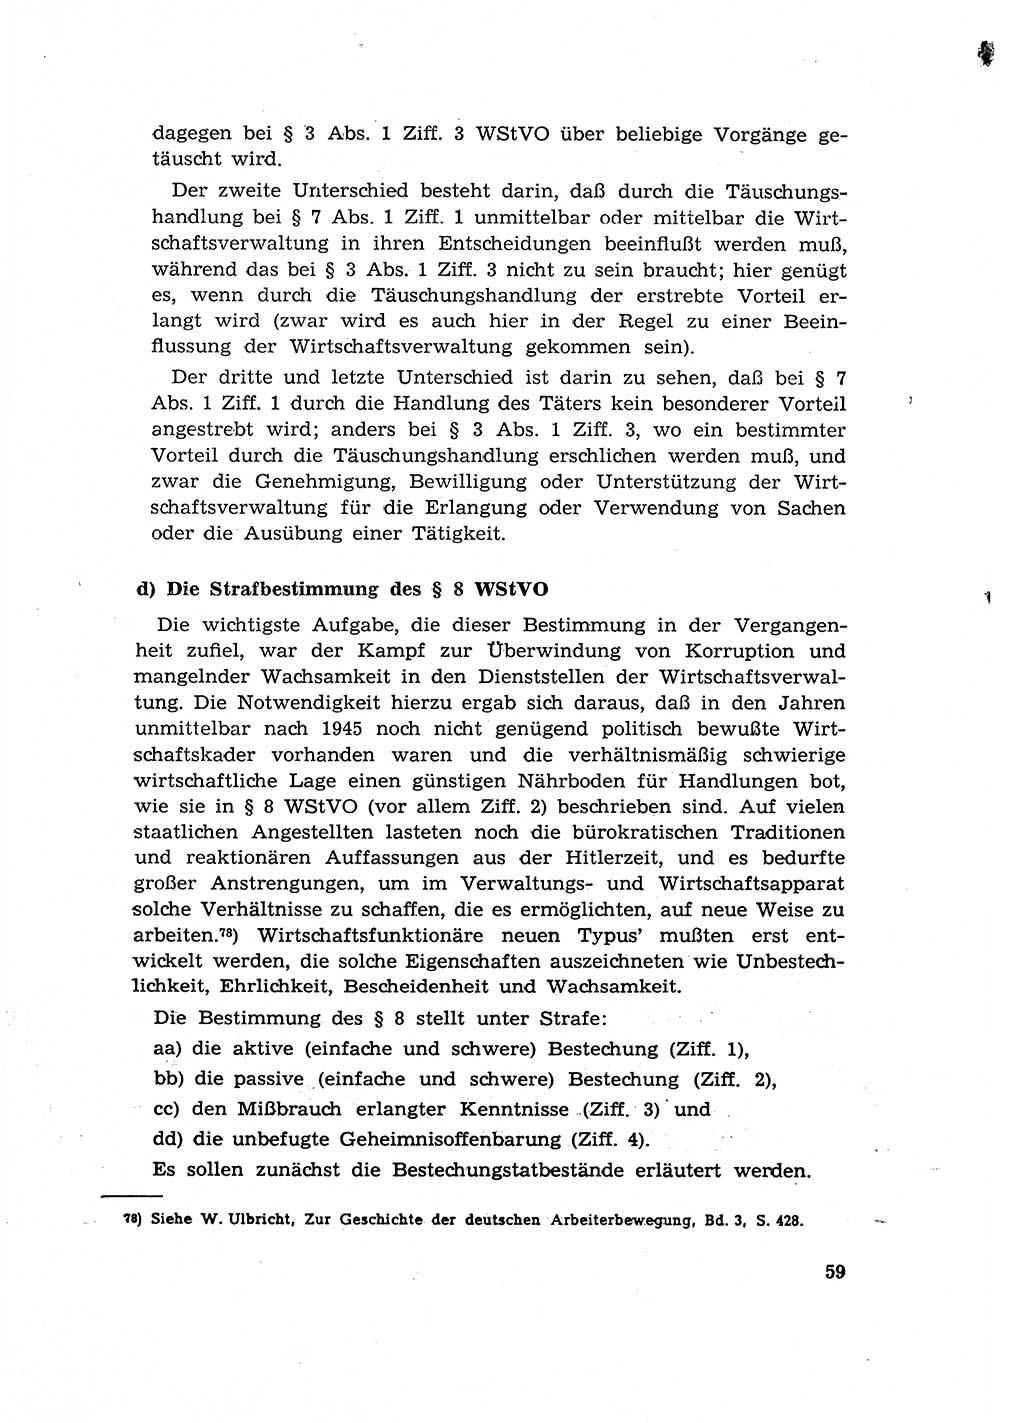 Materialien zum Strafrecht, Besonderer Teil [Deutsche Demokratische Republik (DDR)] 1955, Seite 59 (Mat. Strafr. BT DDR 1955, S. 59)